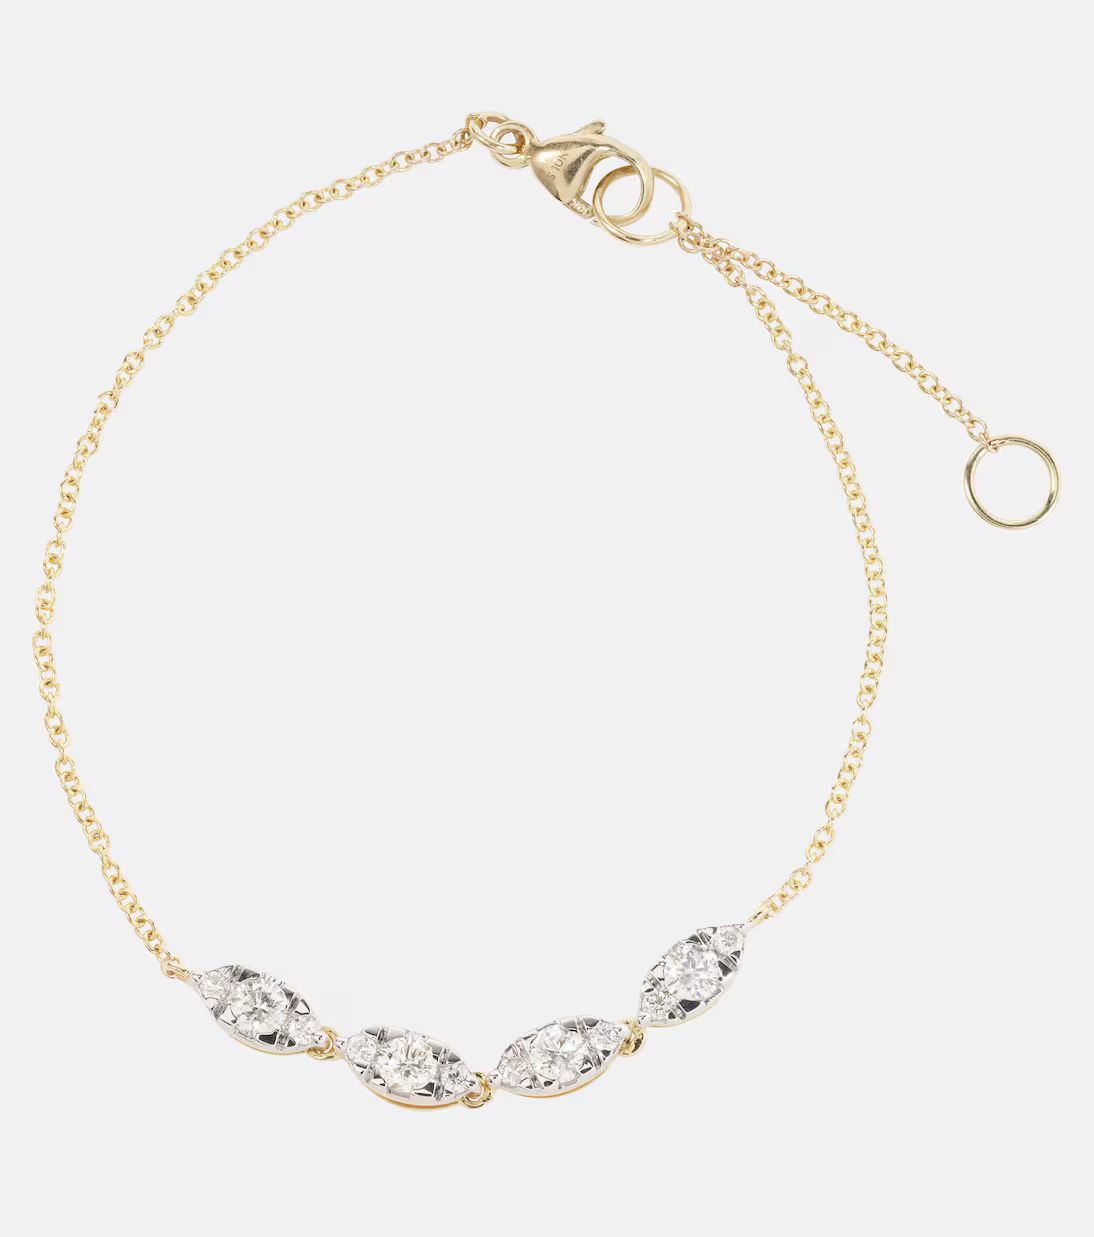 Muse 10kt gold bracelet with diamonds | Mytheresa (US/CA)